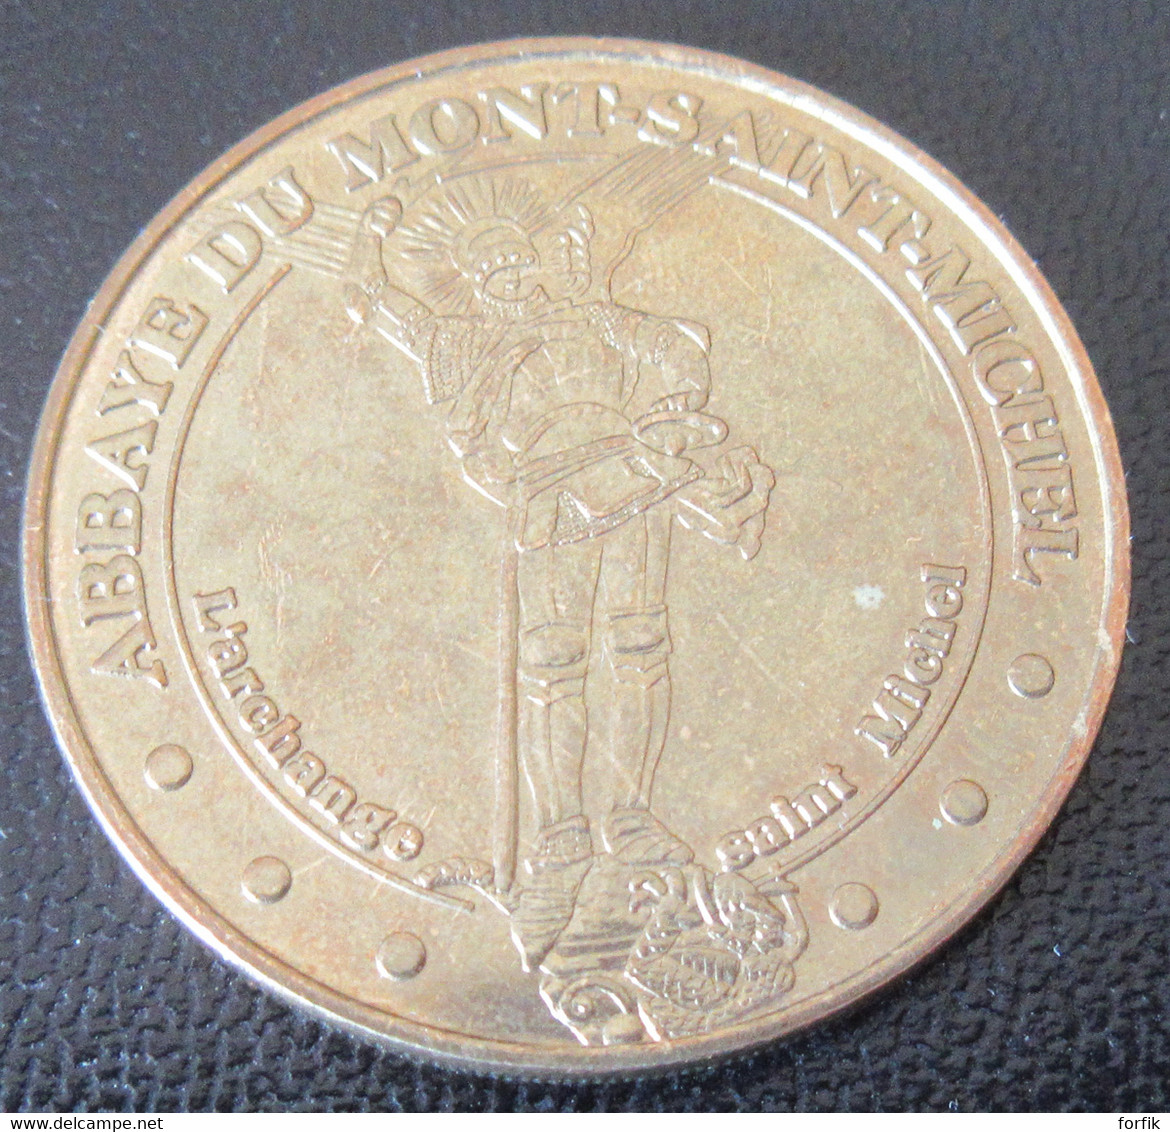 France - Médaille De La Monnaie De Paris - Archange Saint-Michel / Abbay Mont St Michel - 2014 - 2014